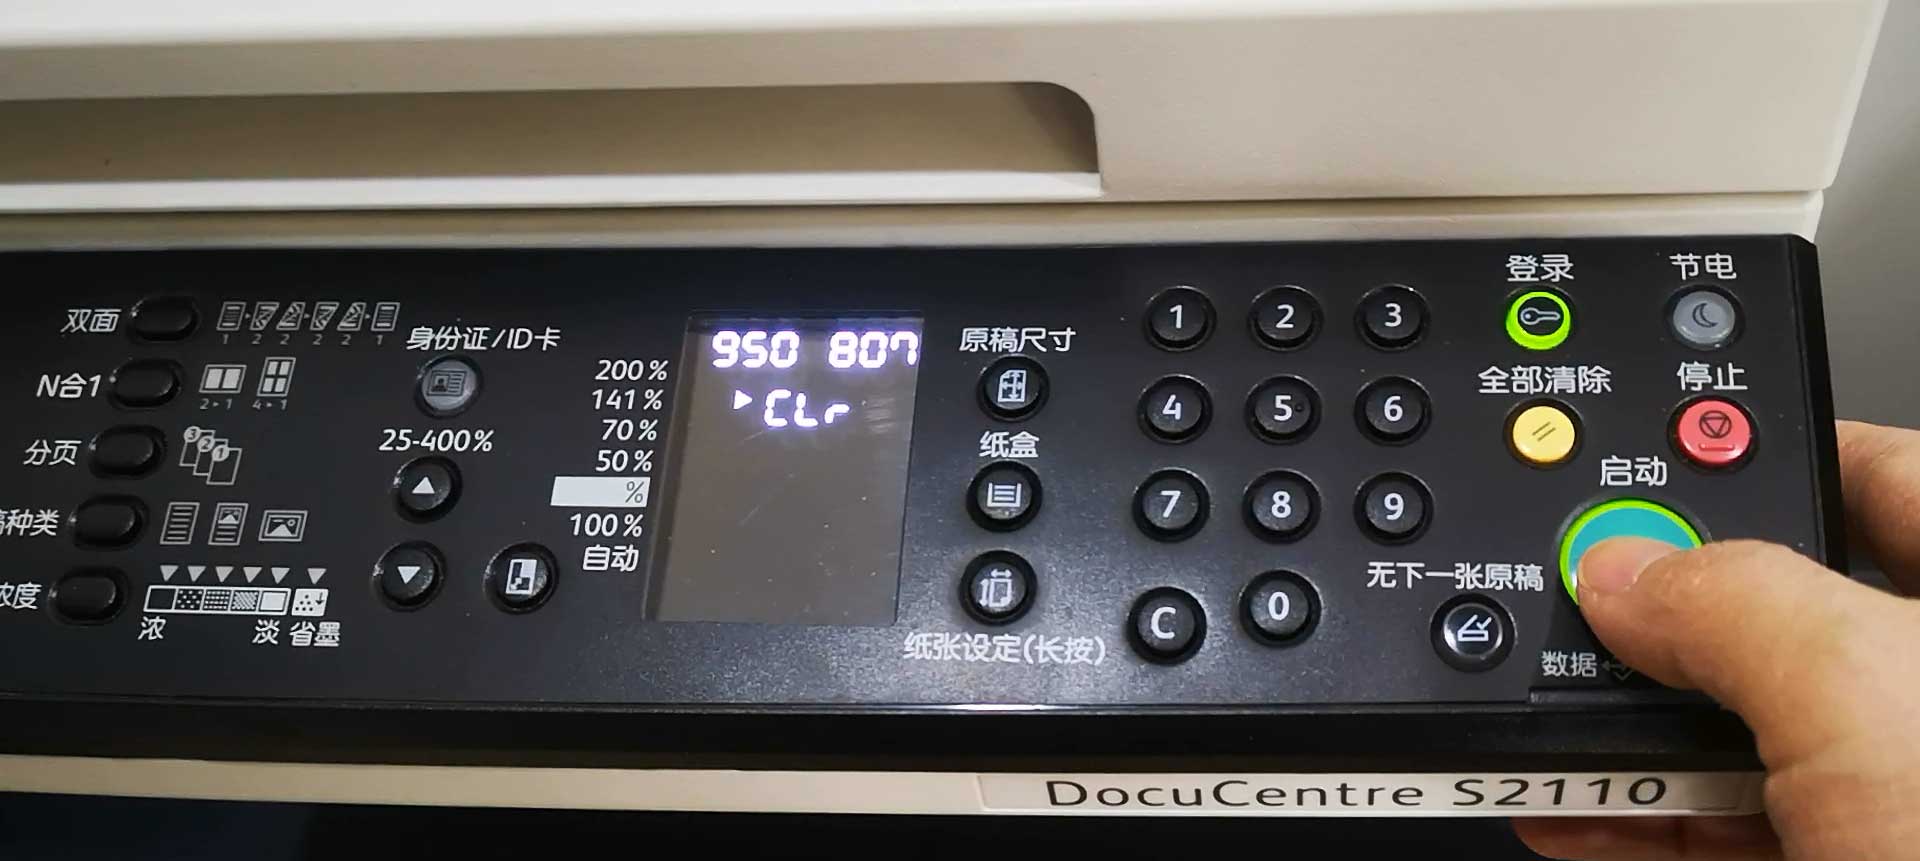 富士施乐DocuCentre S2110打印一体机怎么清零?